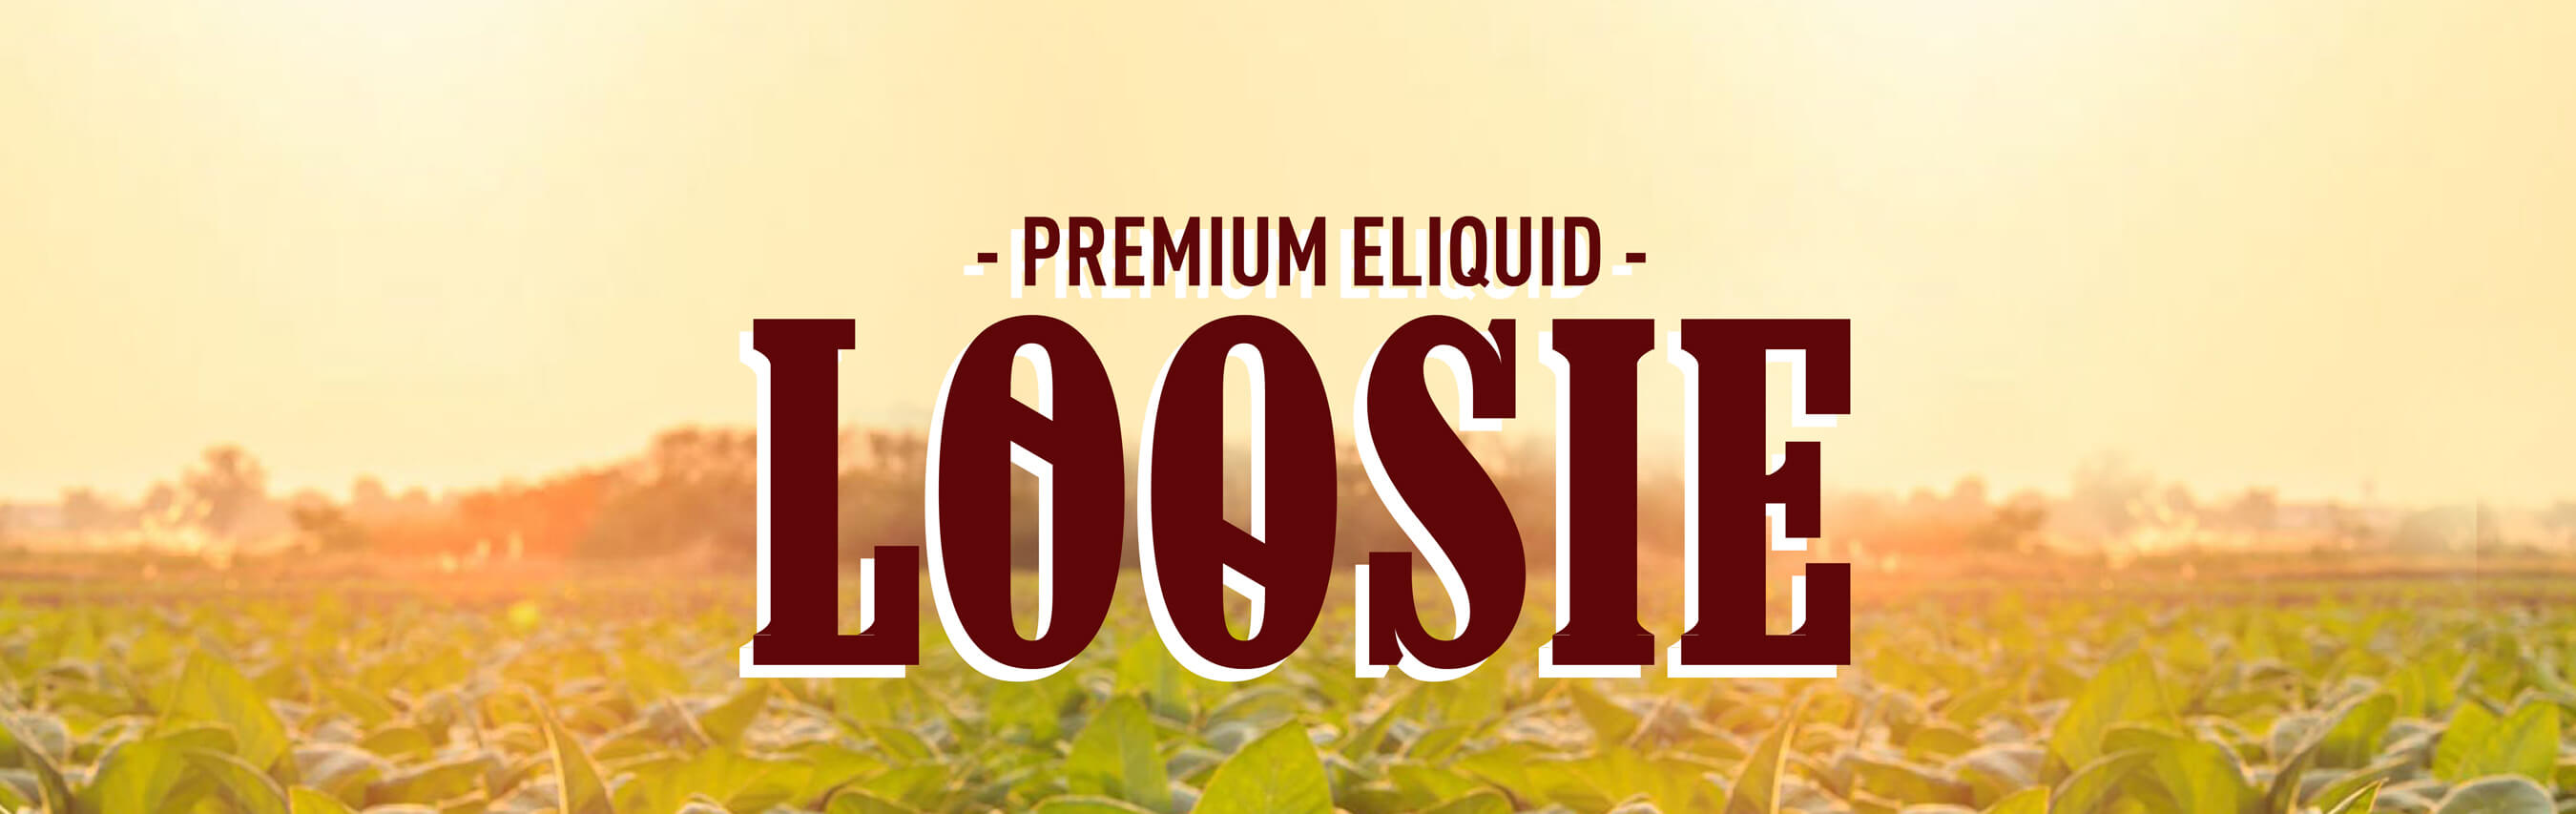 Loosie Premium E-Liquid